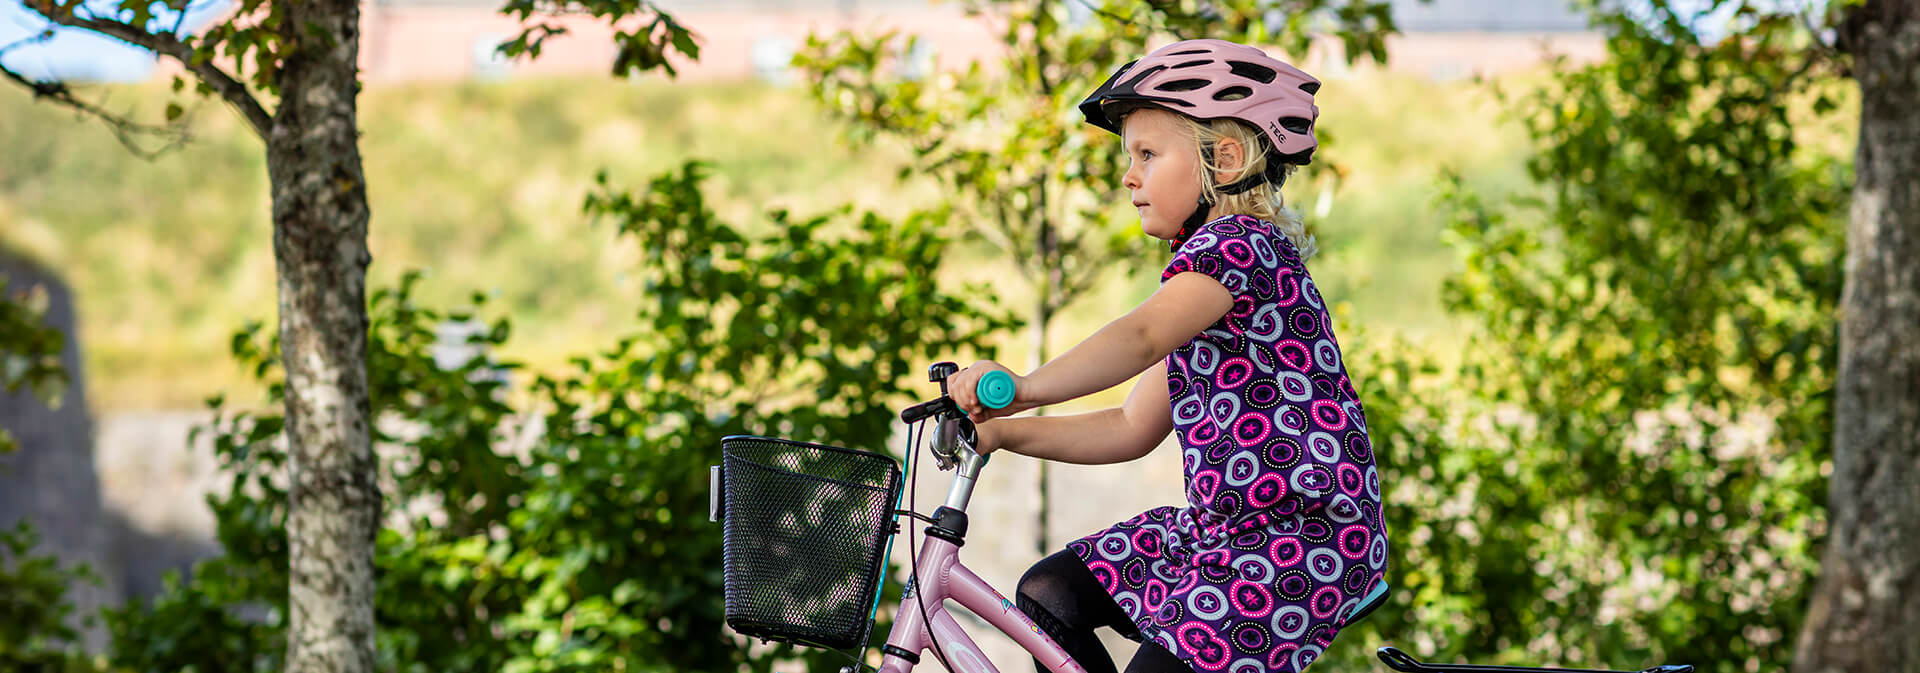 15 fördelar för barn att cykla mer